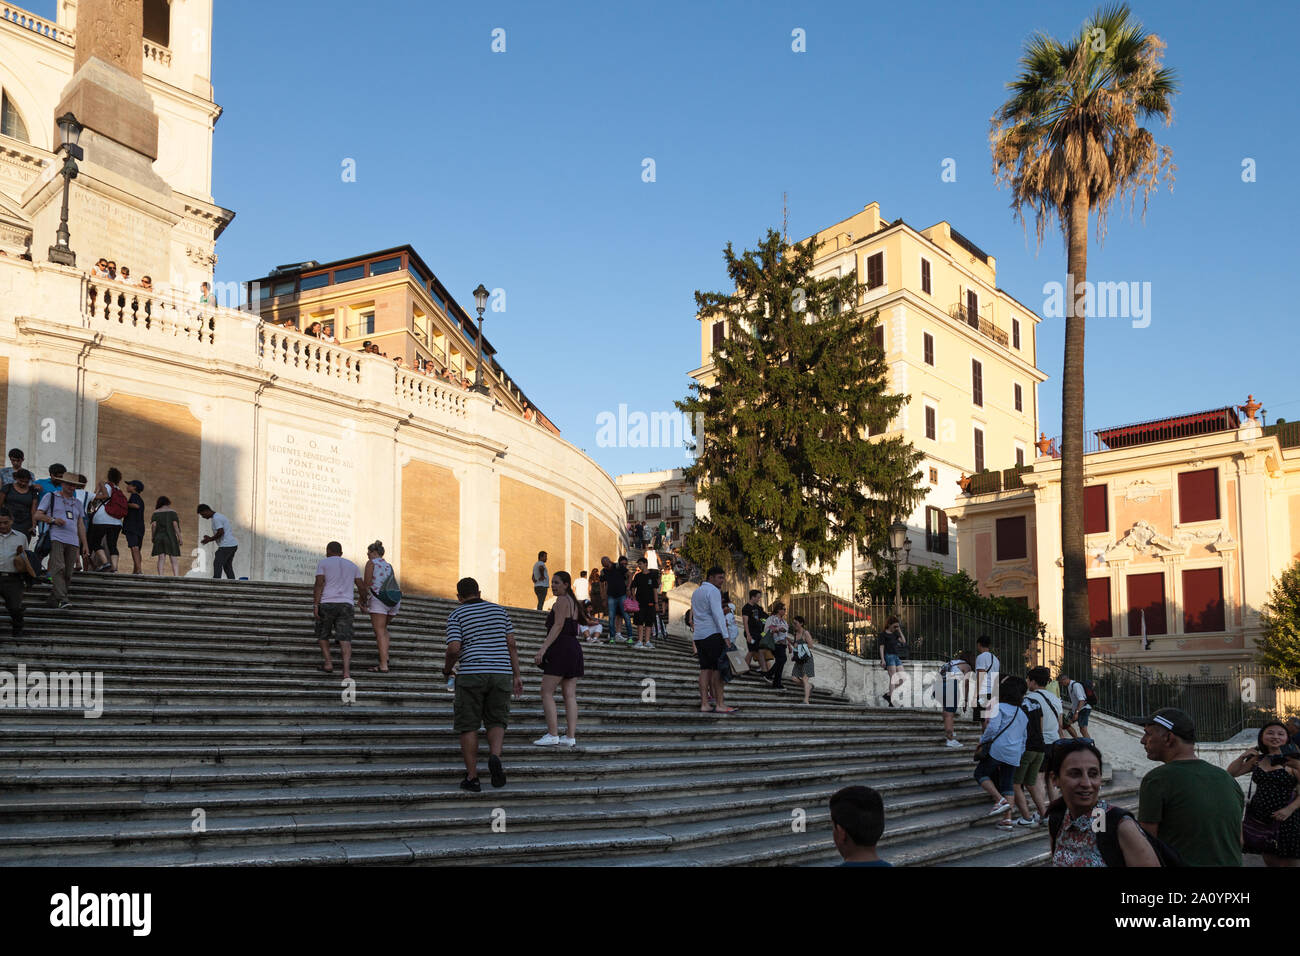 Piazza di Spagna. Escalinata de Trinità dei Monti, iglesia, Juan Keat's House, y el palacio del siglo xv del cardenal Lorenzo Cybo de Mari. Roma, Italia Foto de stock